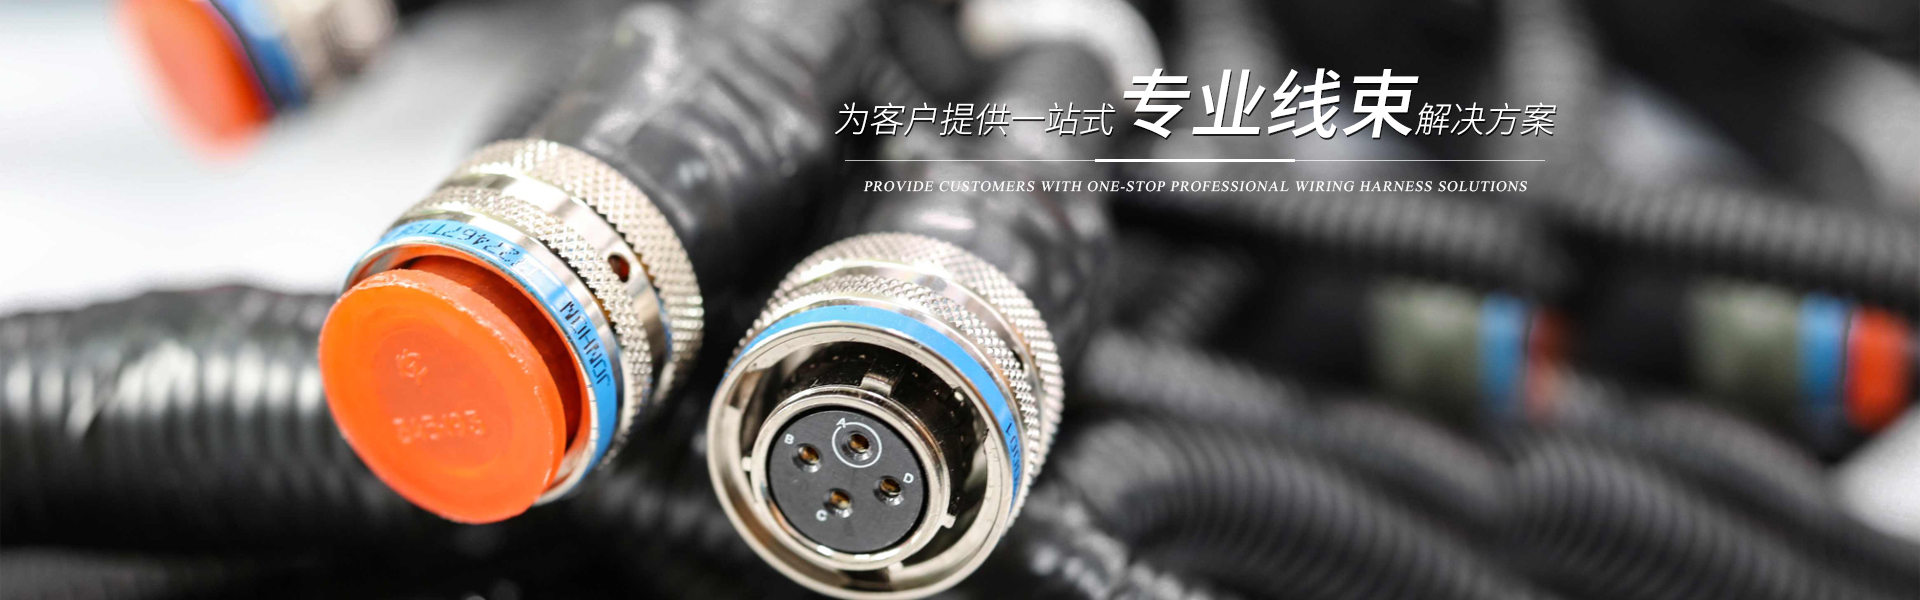 長沙友寶電氣裝備有限公司_長沙線束生產銷售研發